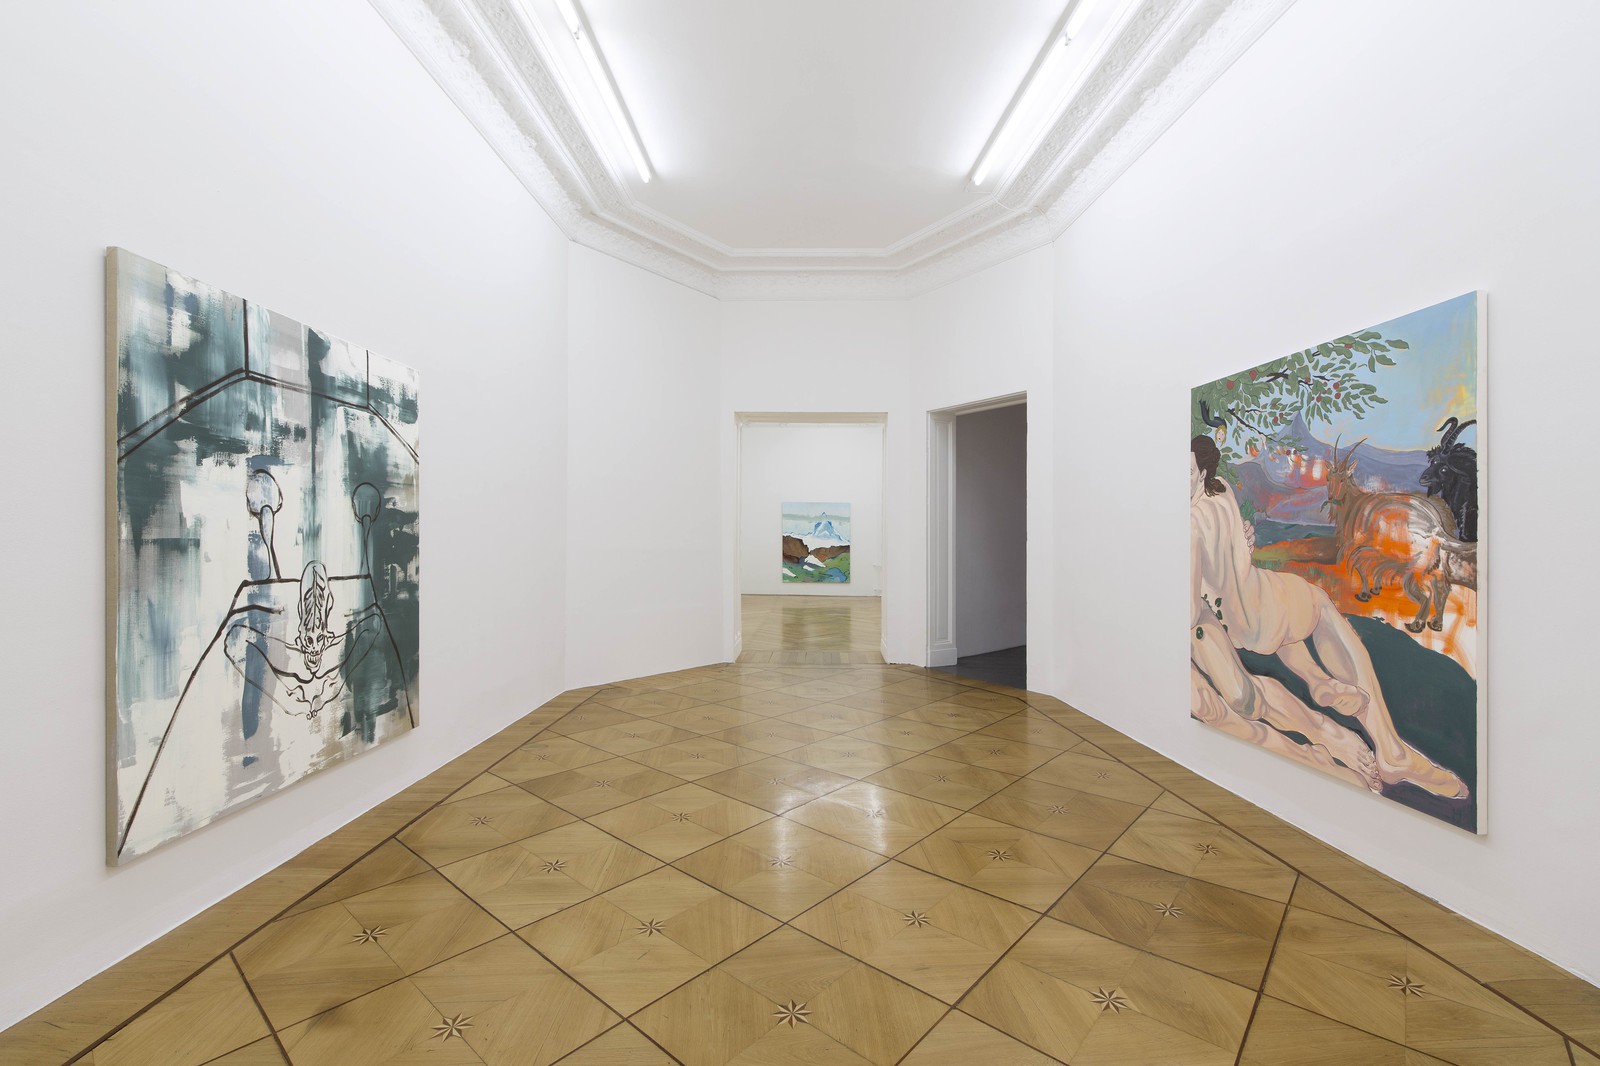 Installation view, Ultra Beauty, Treating Objects Like Women, Société, Berlin, 2015